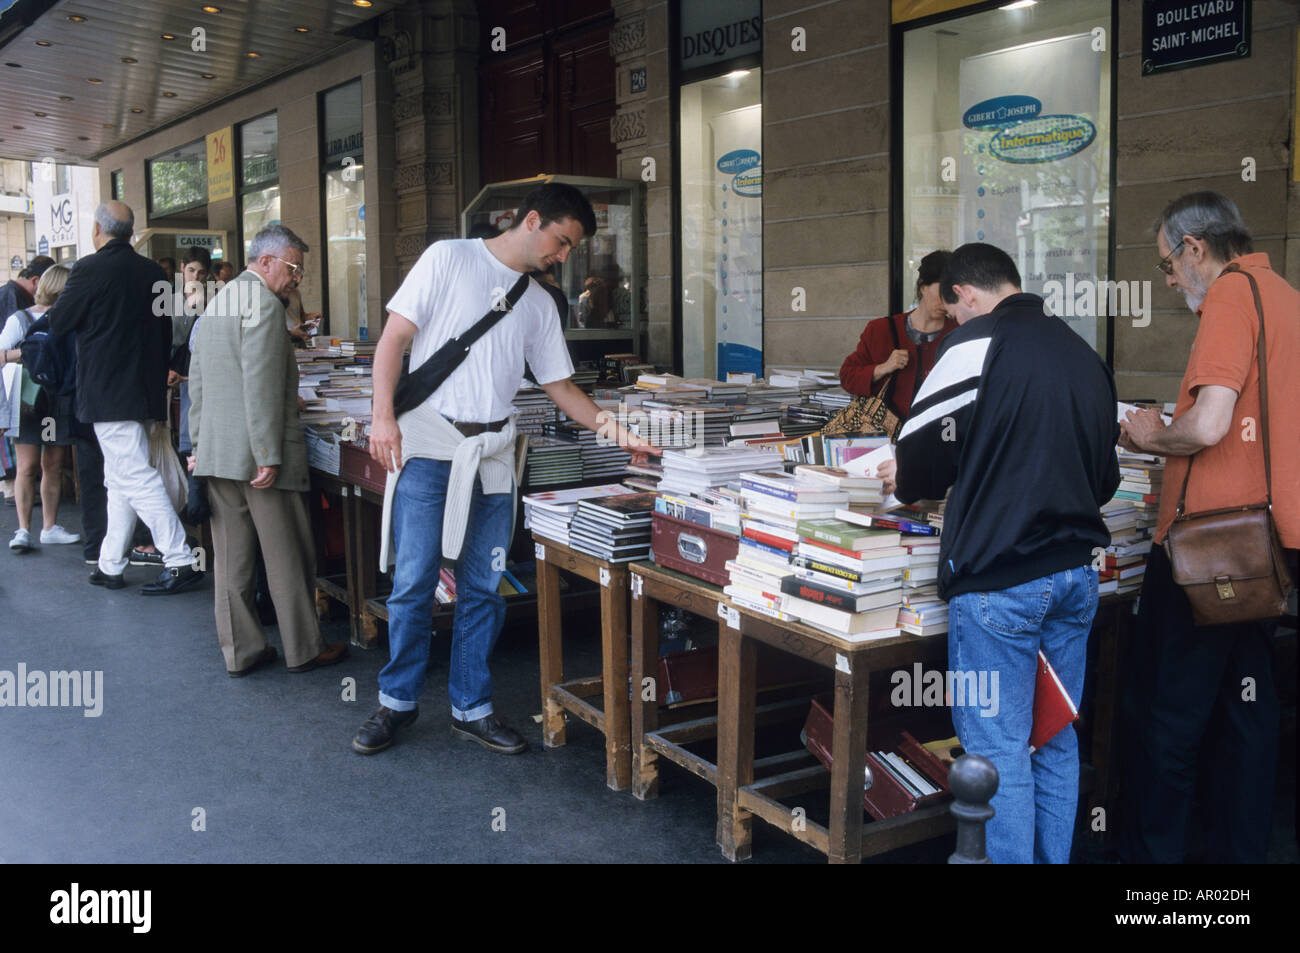 Libreria libri in vendita lungo il marciapiede St Michel Blvd Quartiere Latino parigi francia economia i clienti Foto Stock